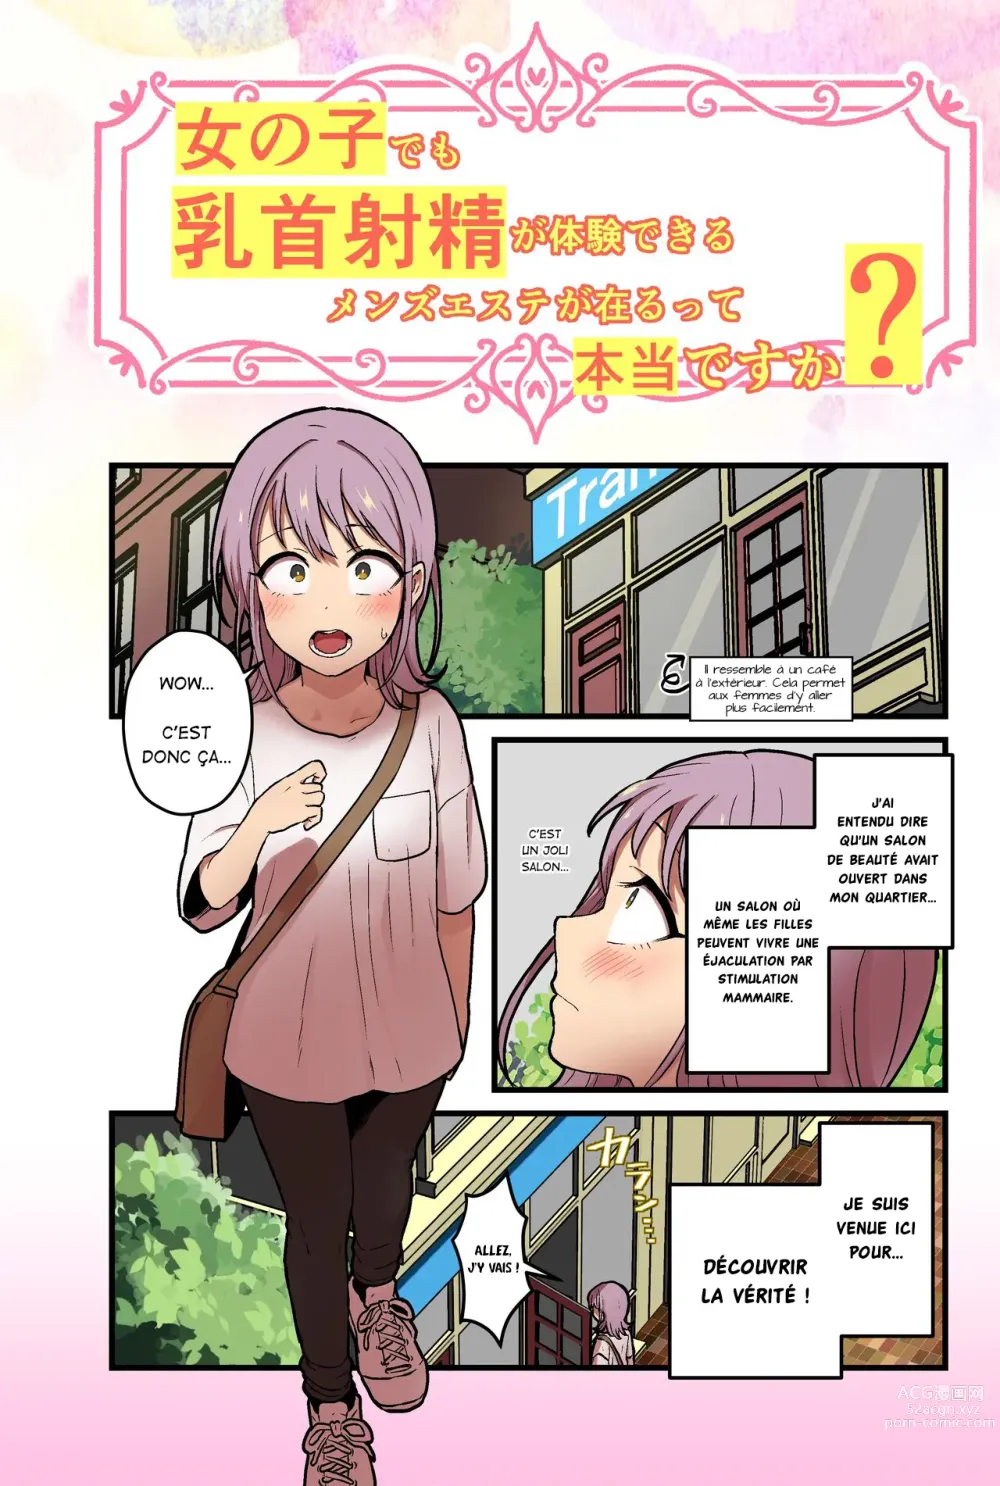 Page 3 of doujinshi Existe-t-il vraiment un salon où les femmes peuvent vivre une éjaculation par stimulation mammaire ?